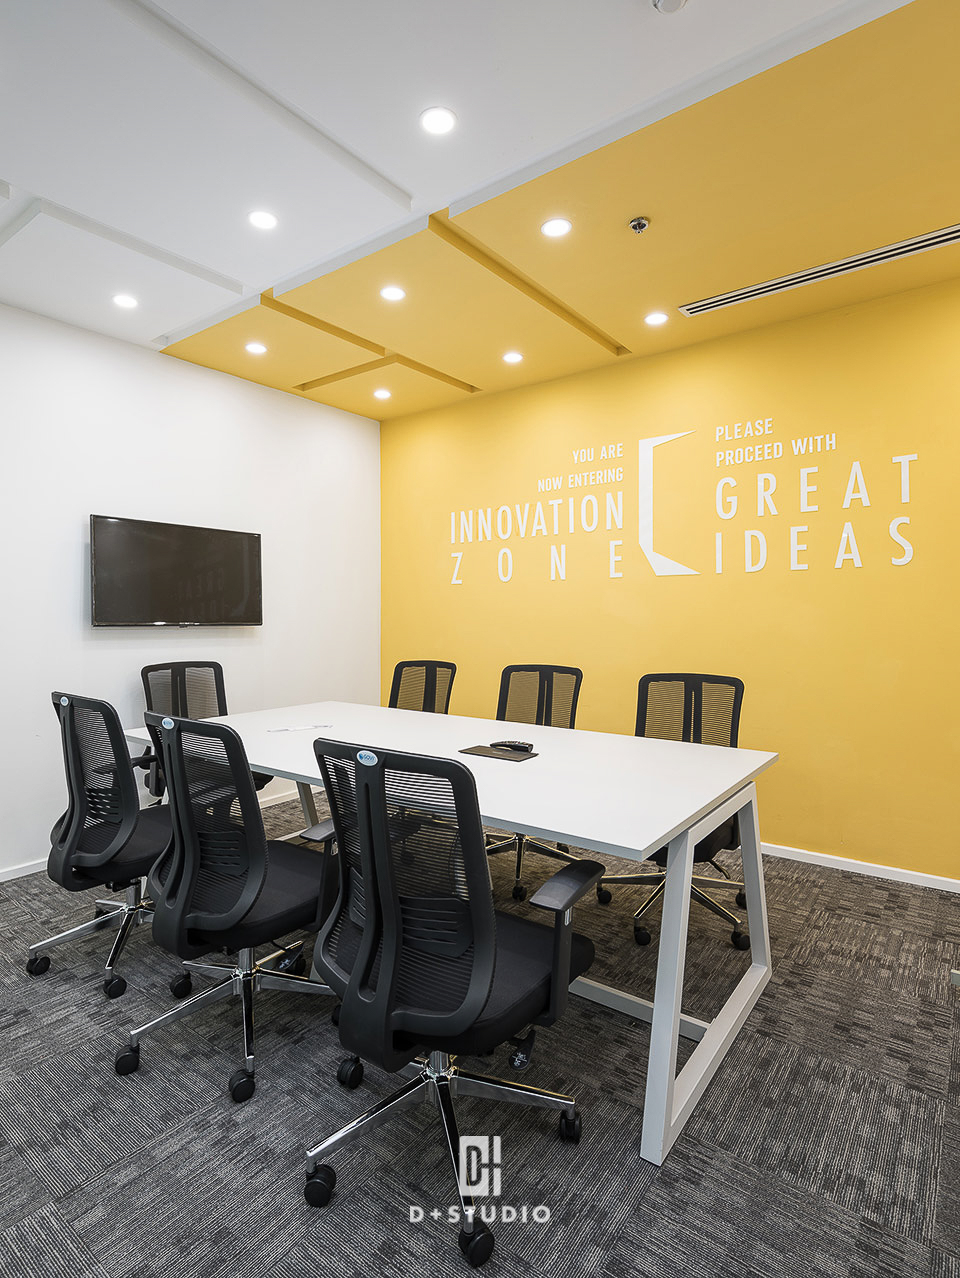 Phòng họp của Cinnamon sơn tường màu vàng như tiếp thêm nguồn năng lượng, kích thích sự sáng tạo của nhân viên trong mỗi cuộc họp